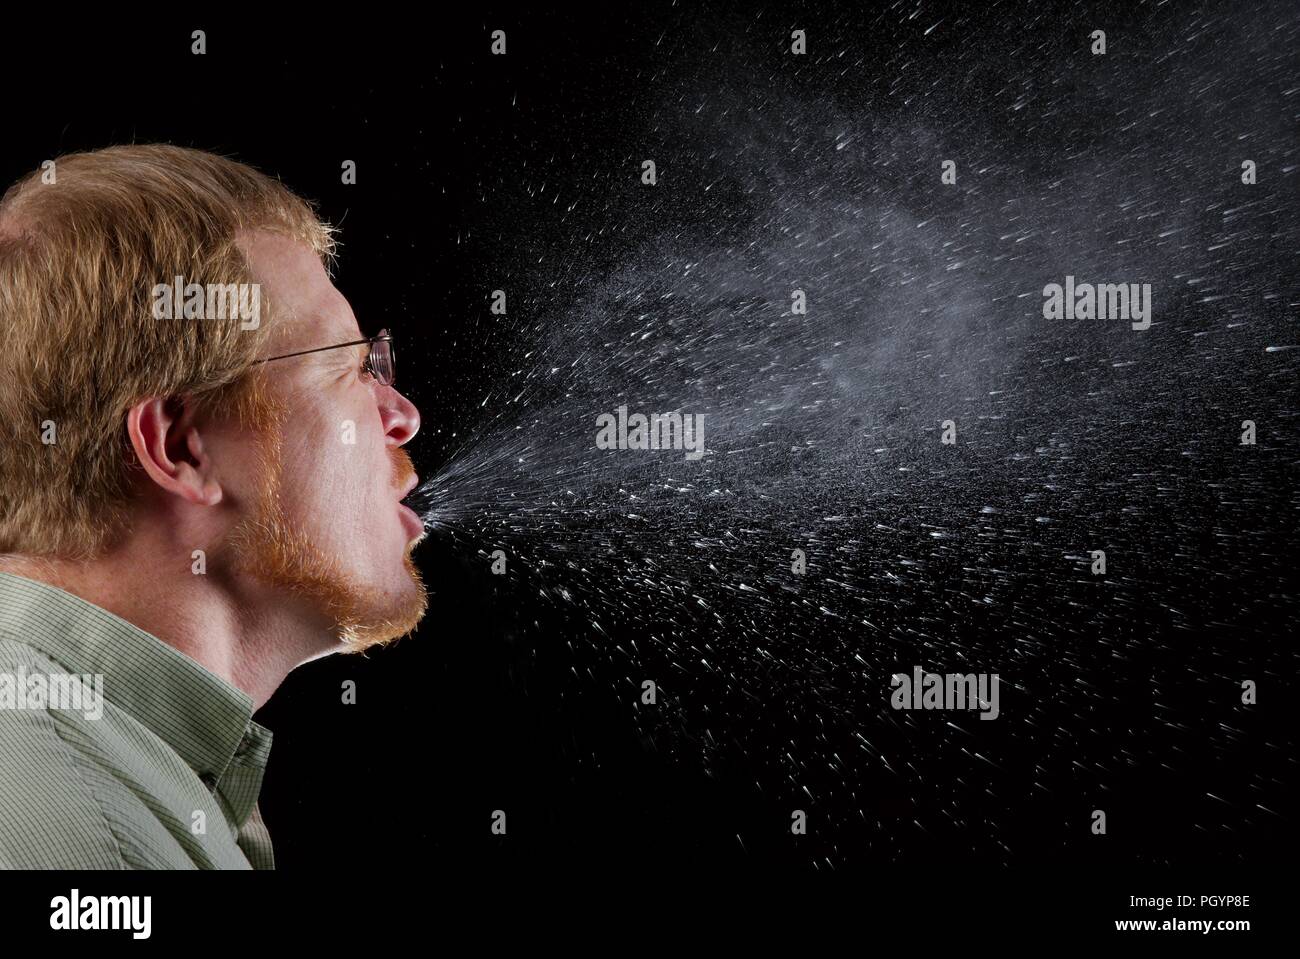 L'uomo starnuti, raffigurato in una fotocamera ad alta velocità immagine, 2009. Immagine cortesia di centri per il controllo delle malattie (CDC) / Brian Judd. () Foto Stock